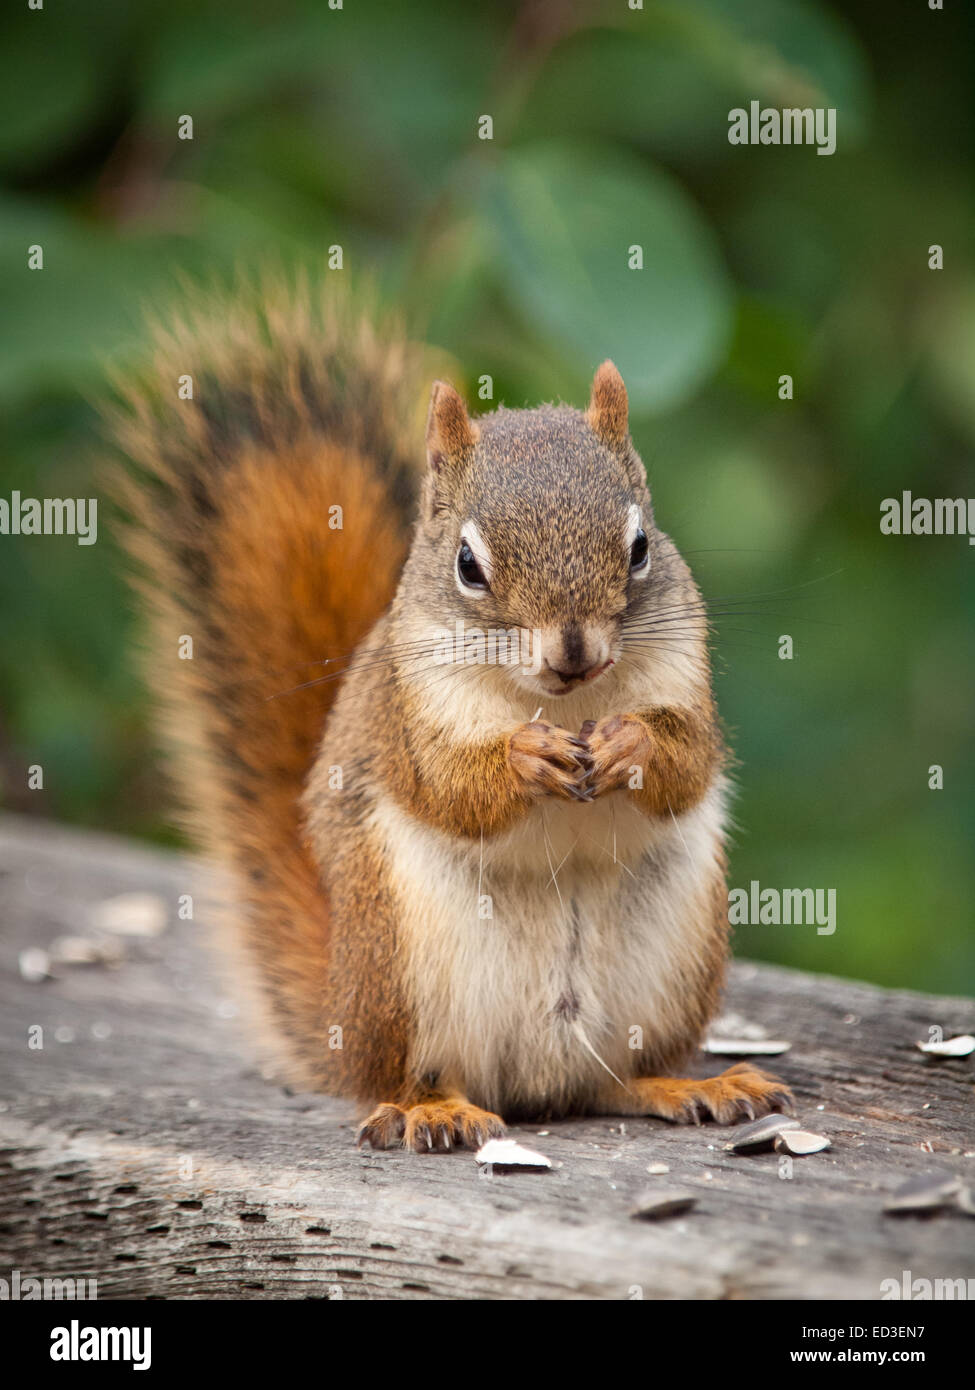 Un écureuil roux se nourrit de graines de tournesol. Parc et réserve naturelle de Whitemud, Edmonton, Alberta, Canada. Banque D'Images